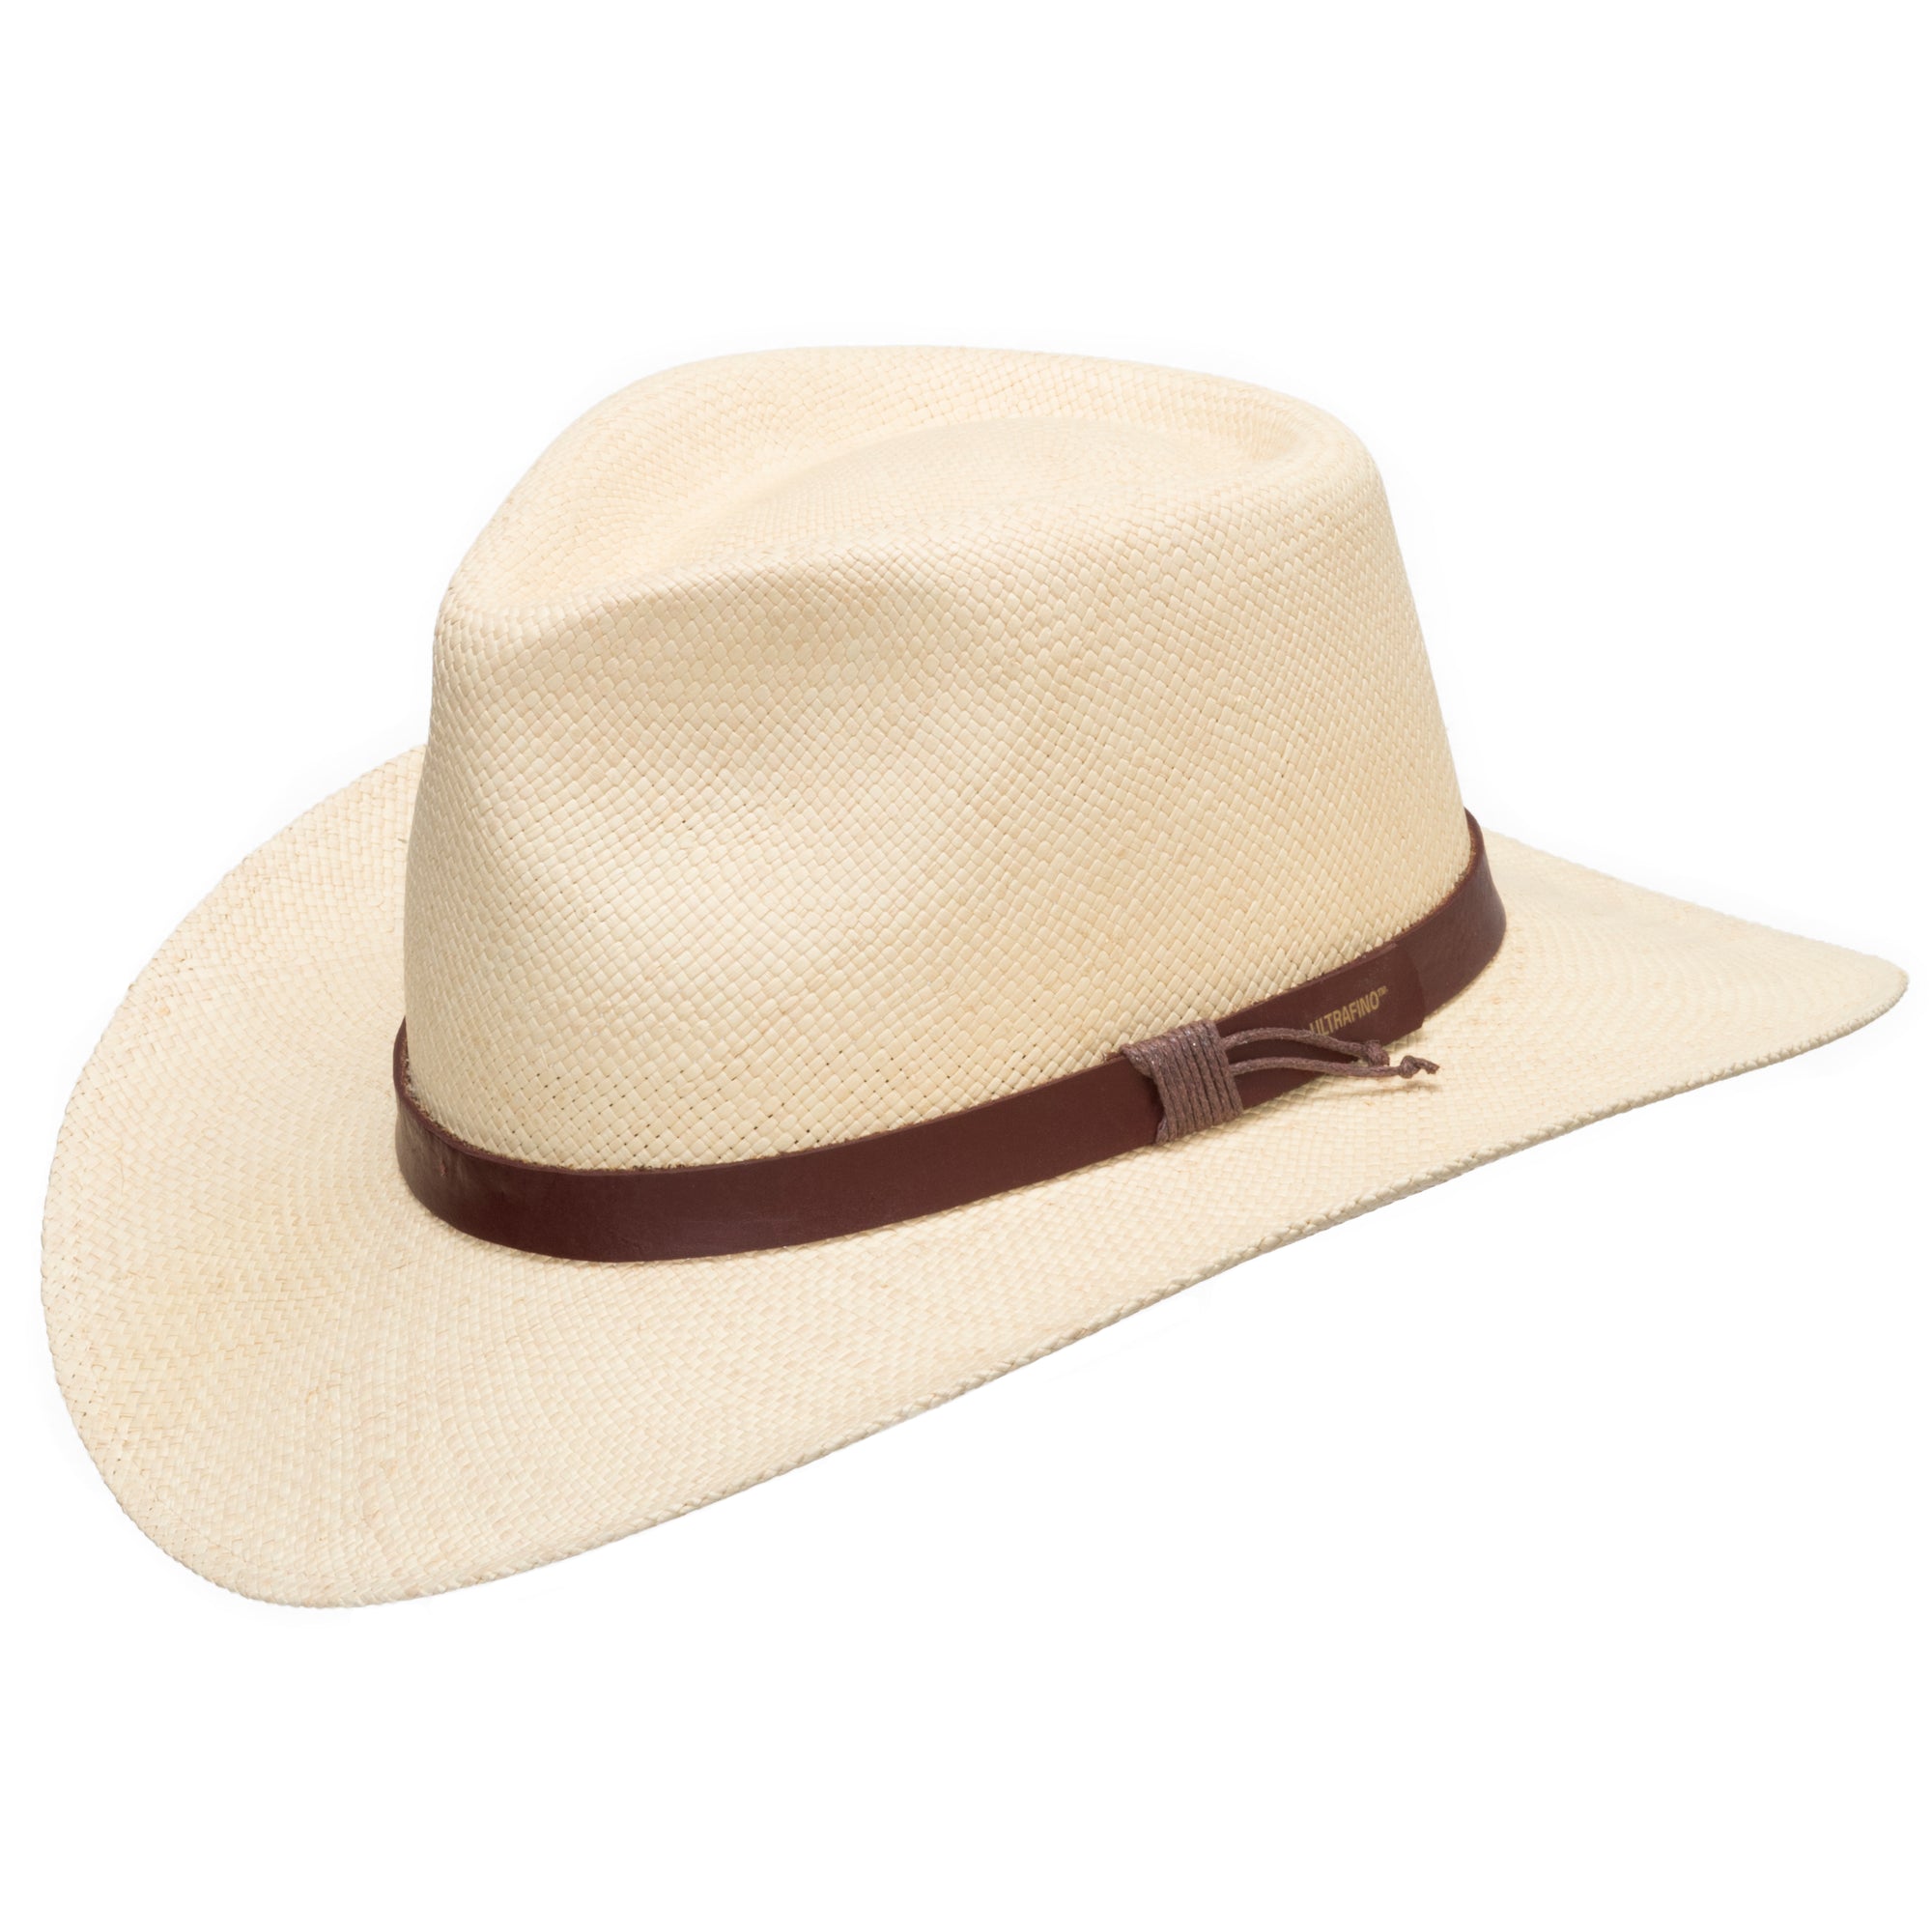 Florida Natural Hat - Fedora for Men